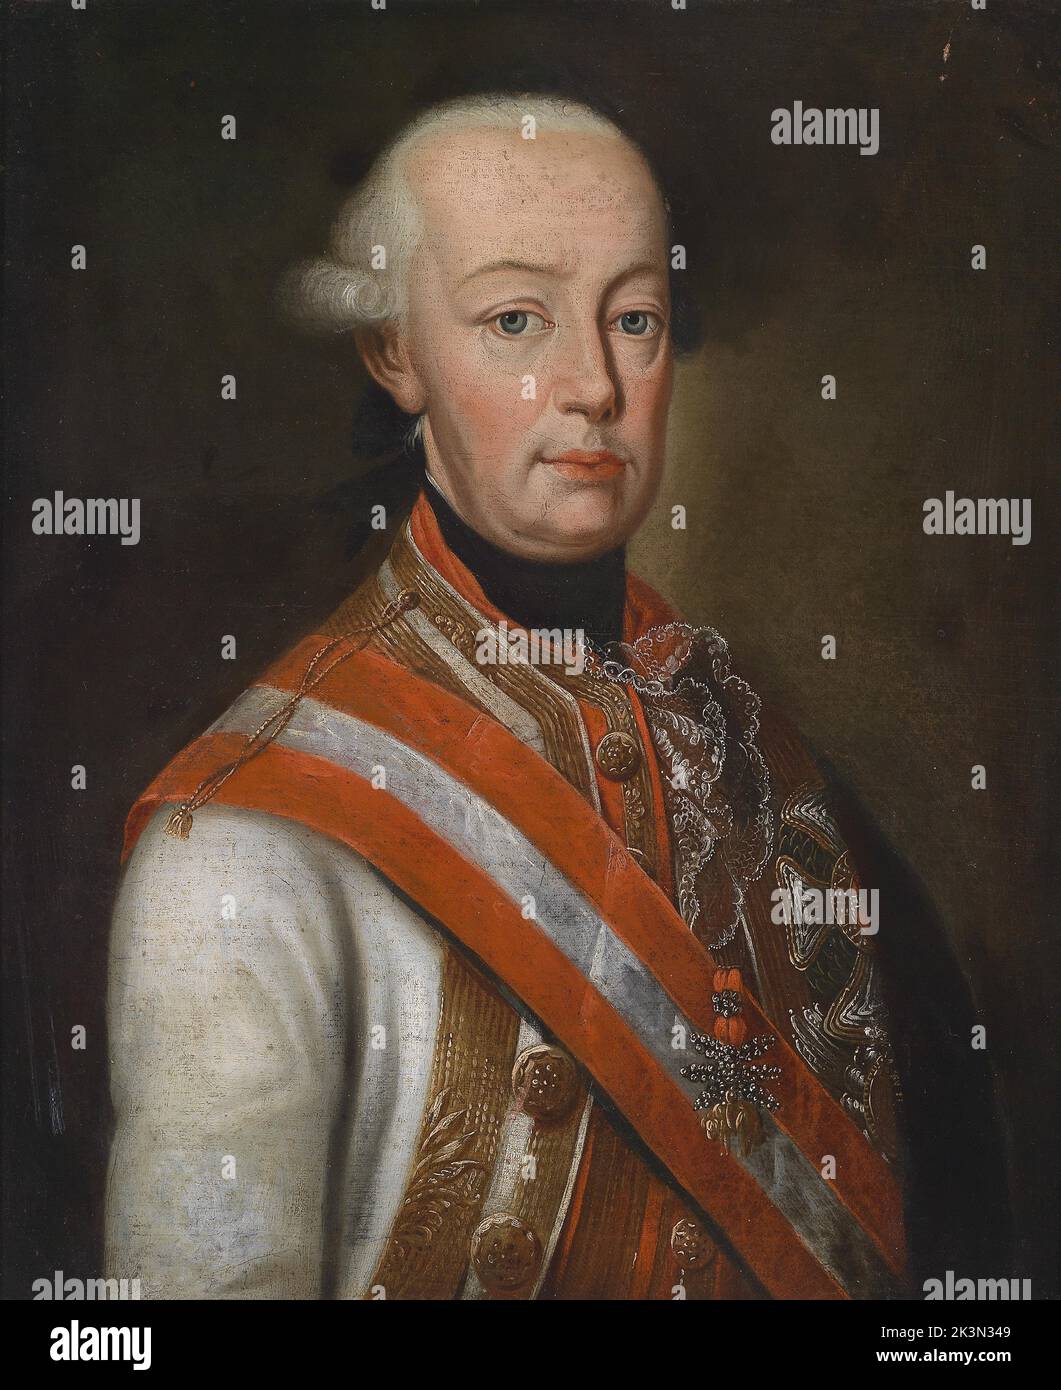 Léopold II (1747 – 1792) le Saint empereur romain, roi de Hongrie et de Bohême, et l'archiduc d'Autriche de 1790 à 1792, et le grand-duc de Toscane de 1765 à 1790. Banque D'Images